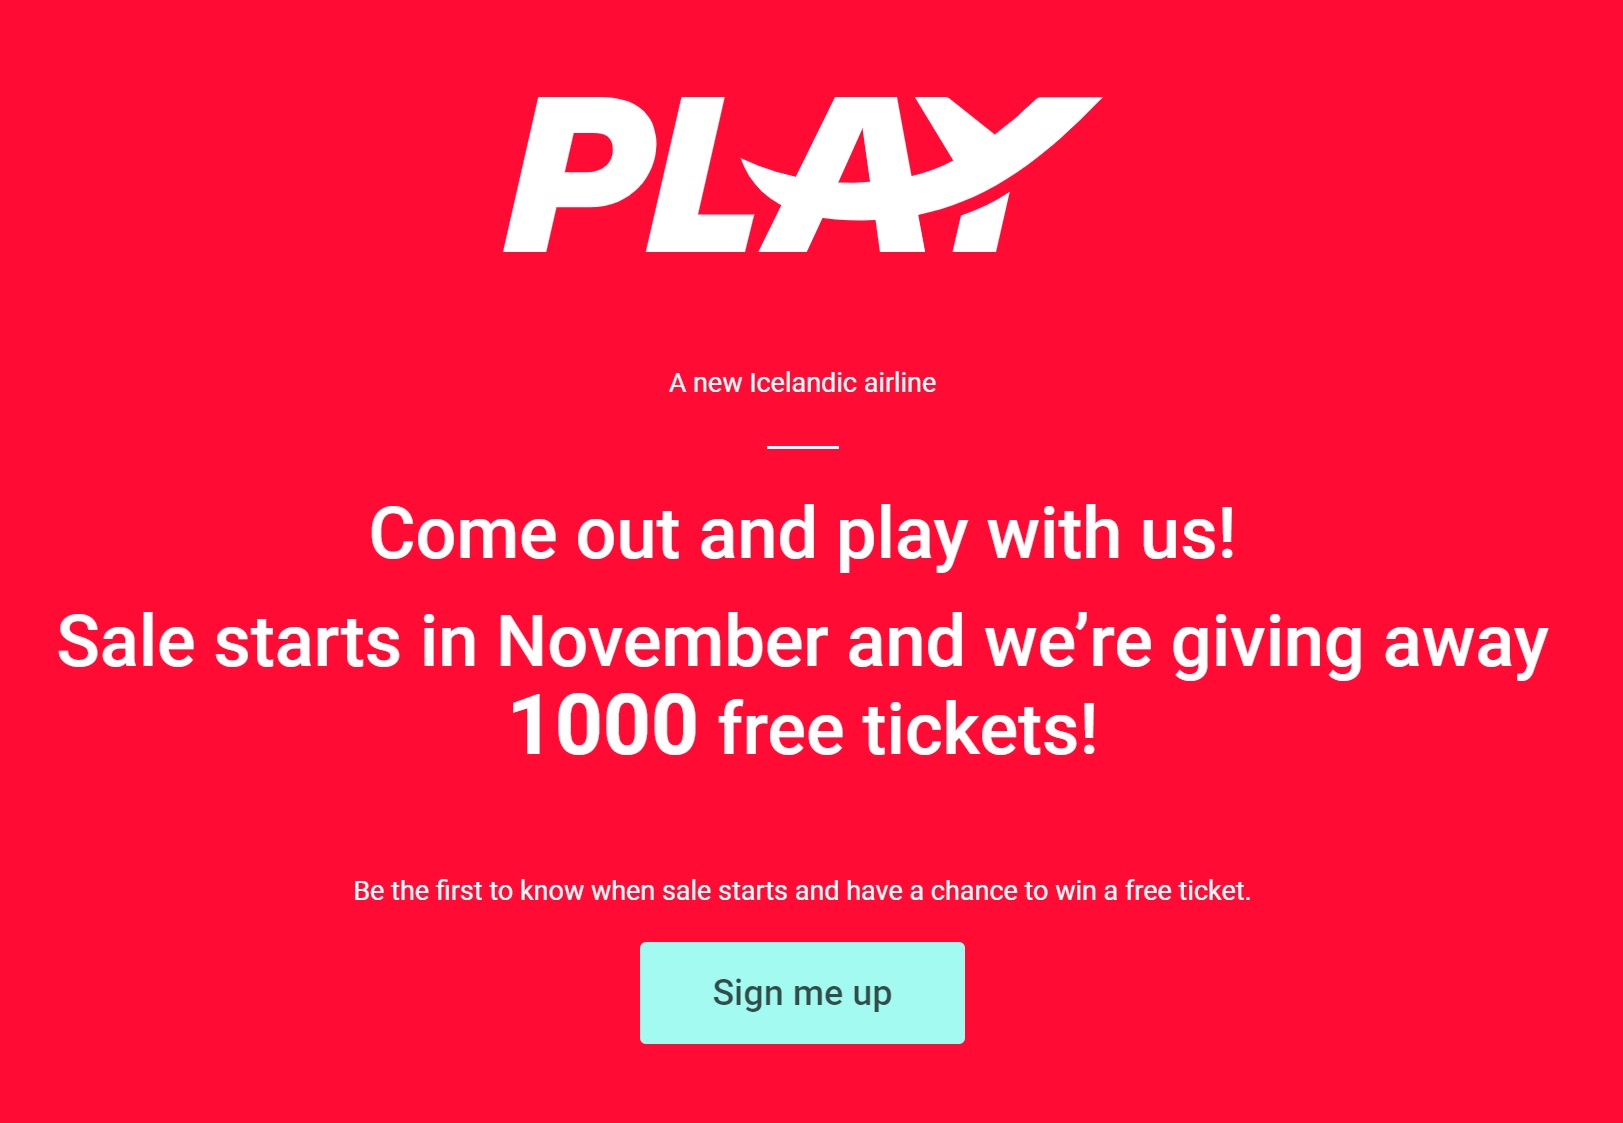 "Sortez et venez jouer avec nous. Les ventes commencent en Novembre et nous offrons 1000 tickets gratuits" à la UNE du site Play - DR